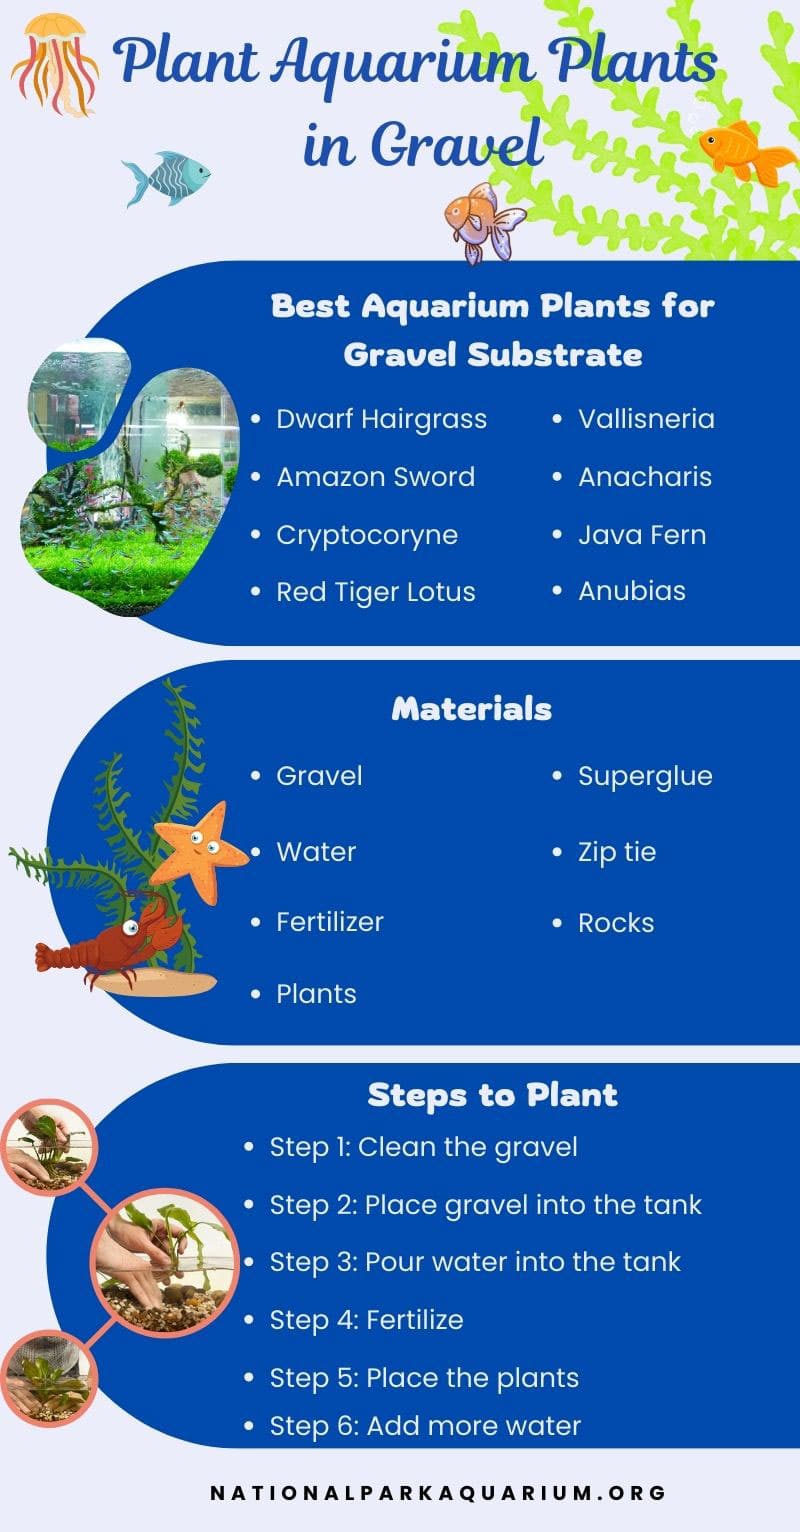 How to Plant Aquarium Plants in Gravel